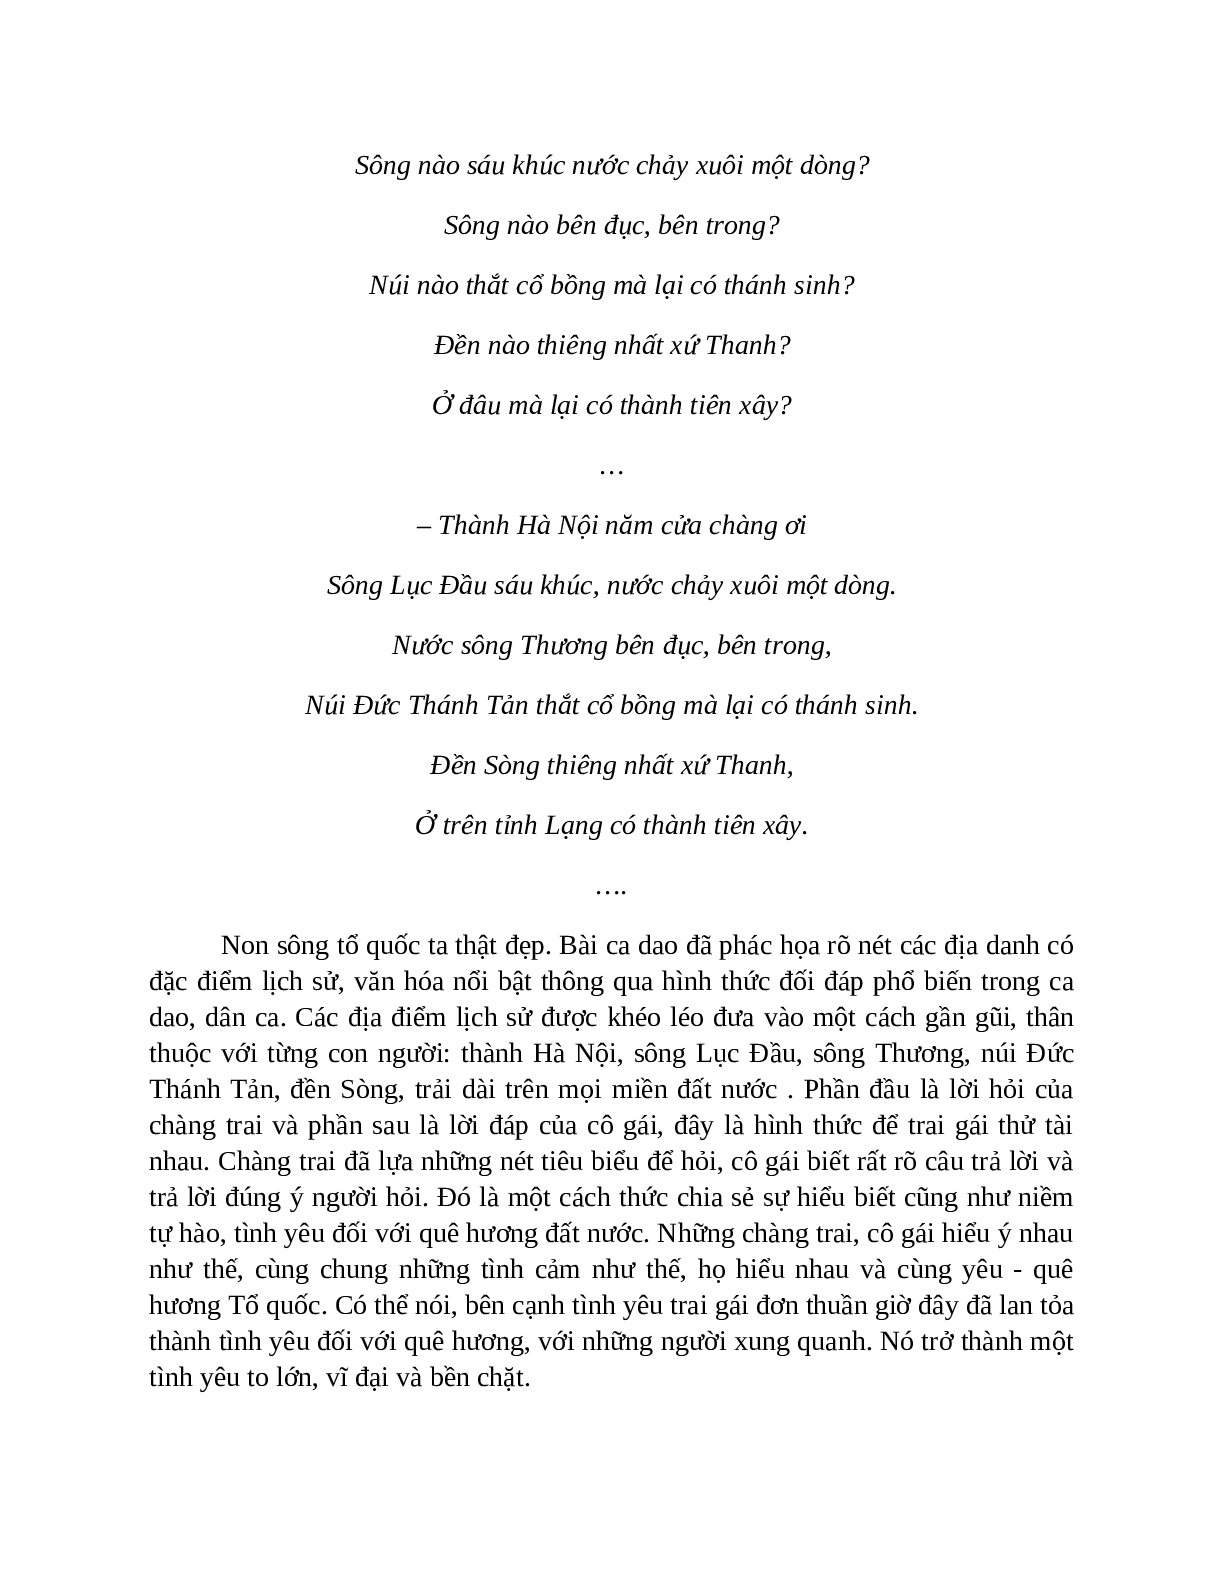 Sơ đồ tư duy bài Những câu hát về tình yêu quê hương, đất nước, con người dễ nhớ, ngắn nhất - Ngữ văn lớp 7 (trang 5)